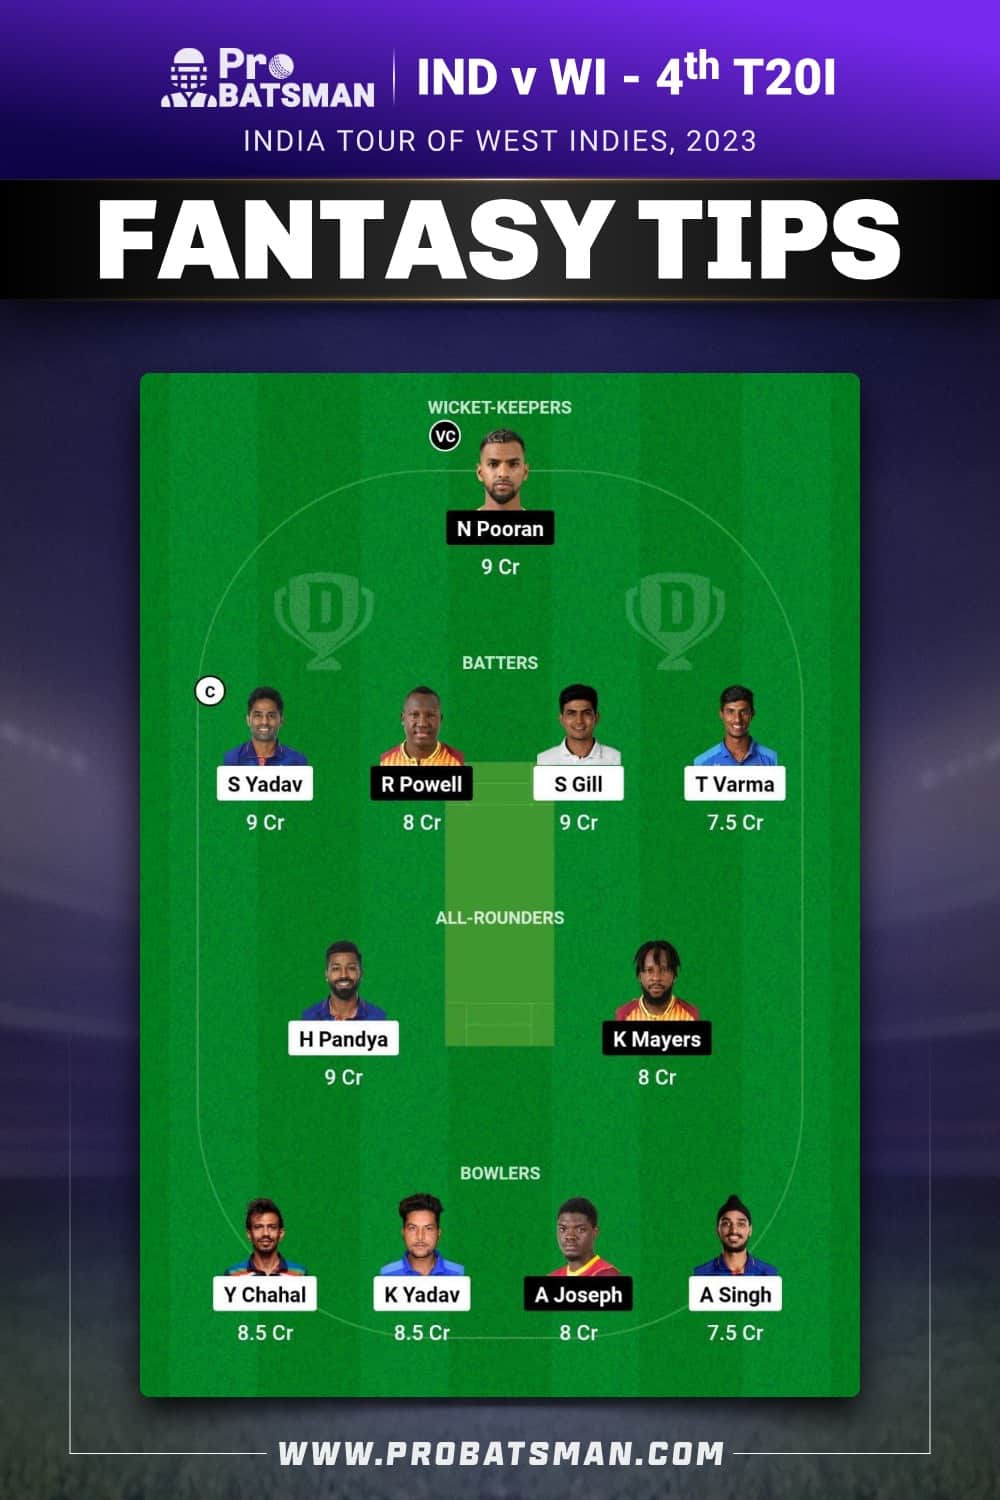 IND vs WI Dream11 Prediction for 4th T20I - Fantasy Team 2